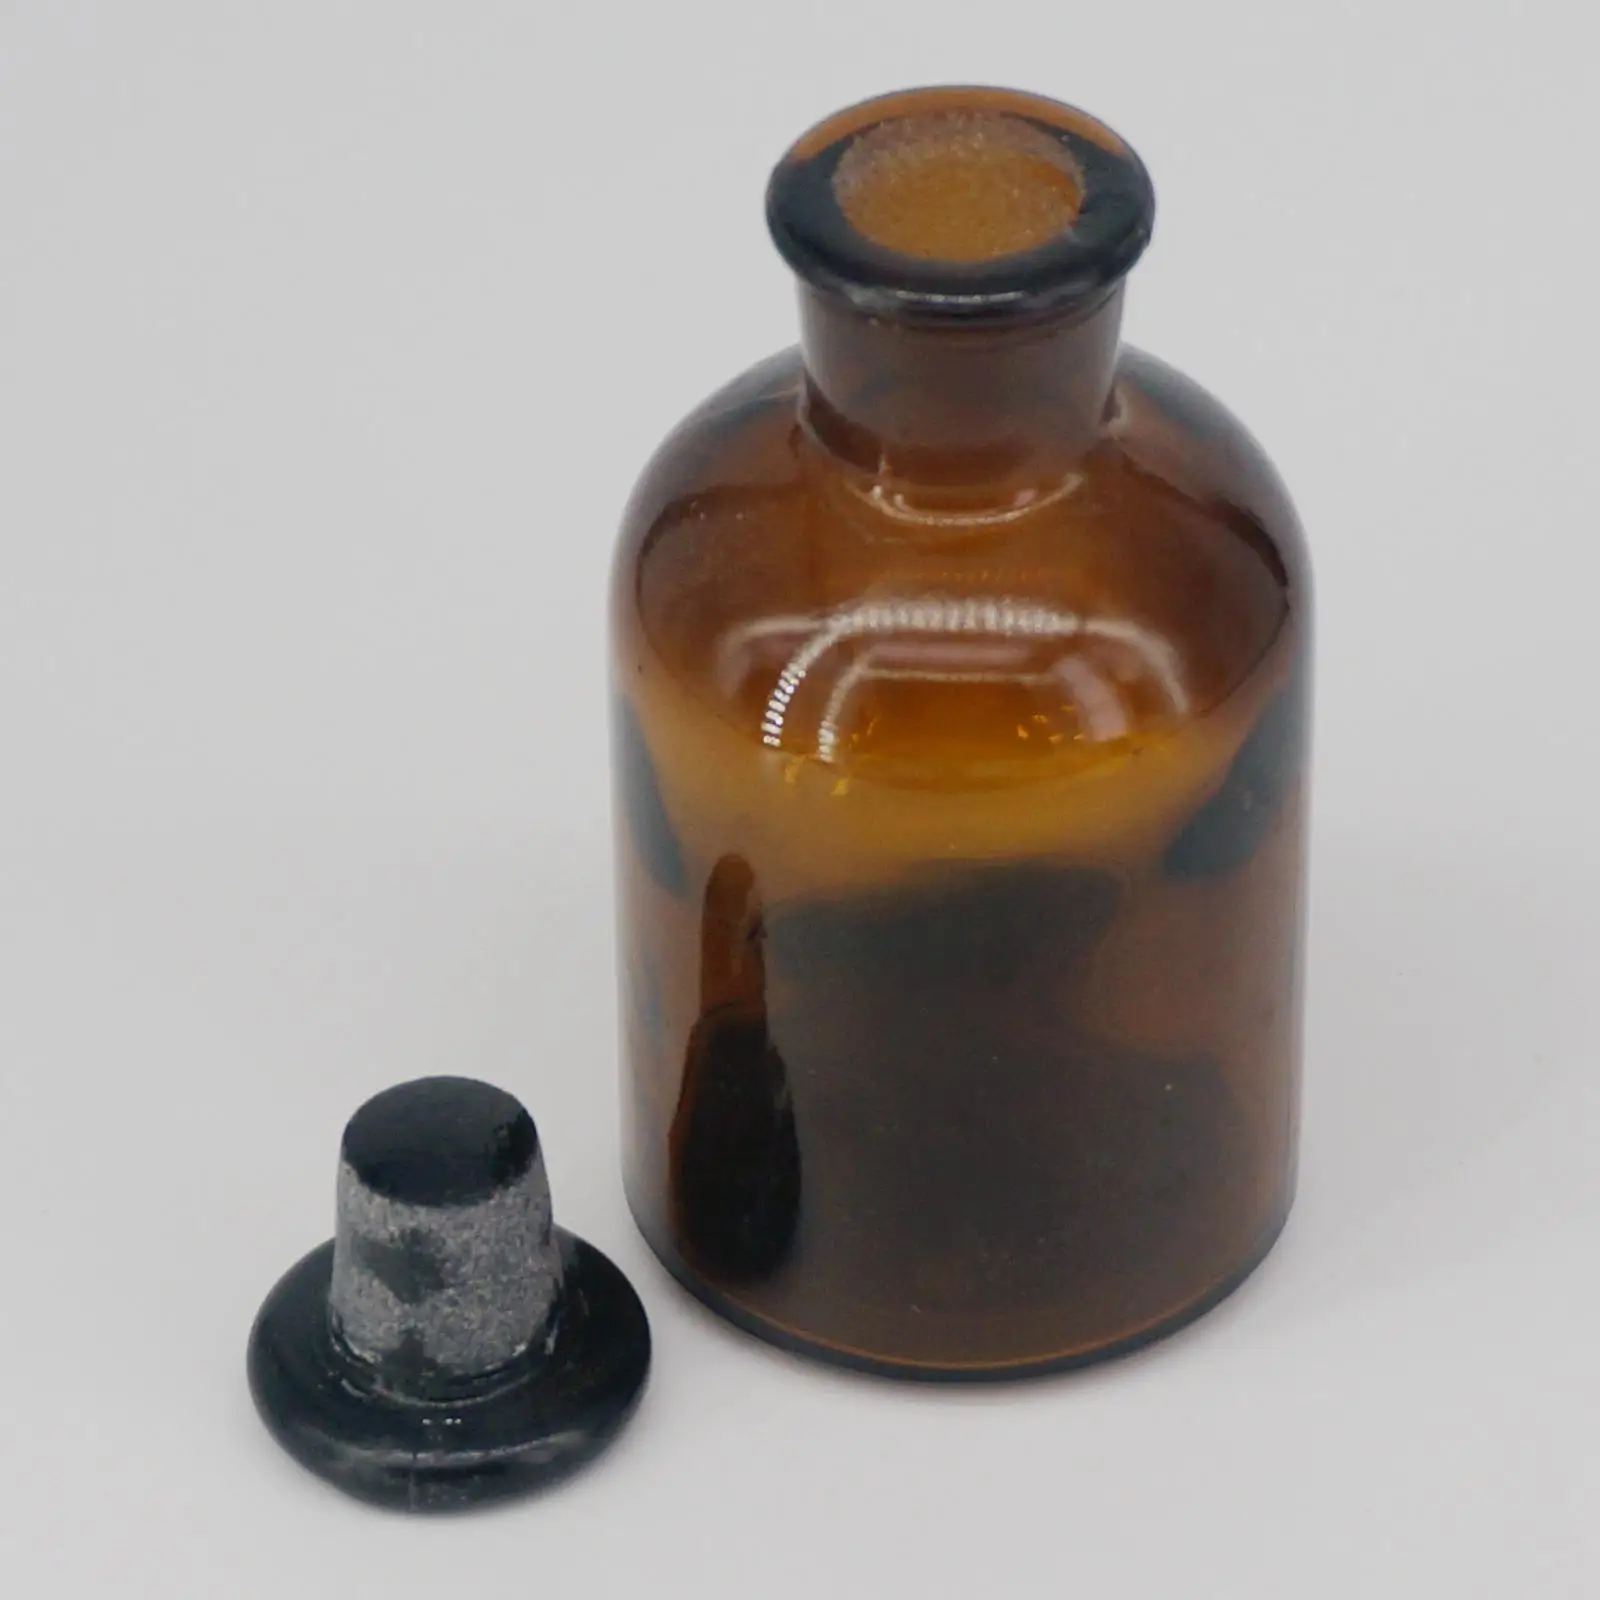 125 мл коричневый Стекло узкий рот бутылка с Stooper лаборатория химии Стекло ware преподавания